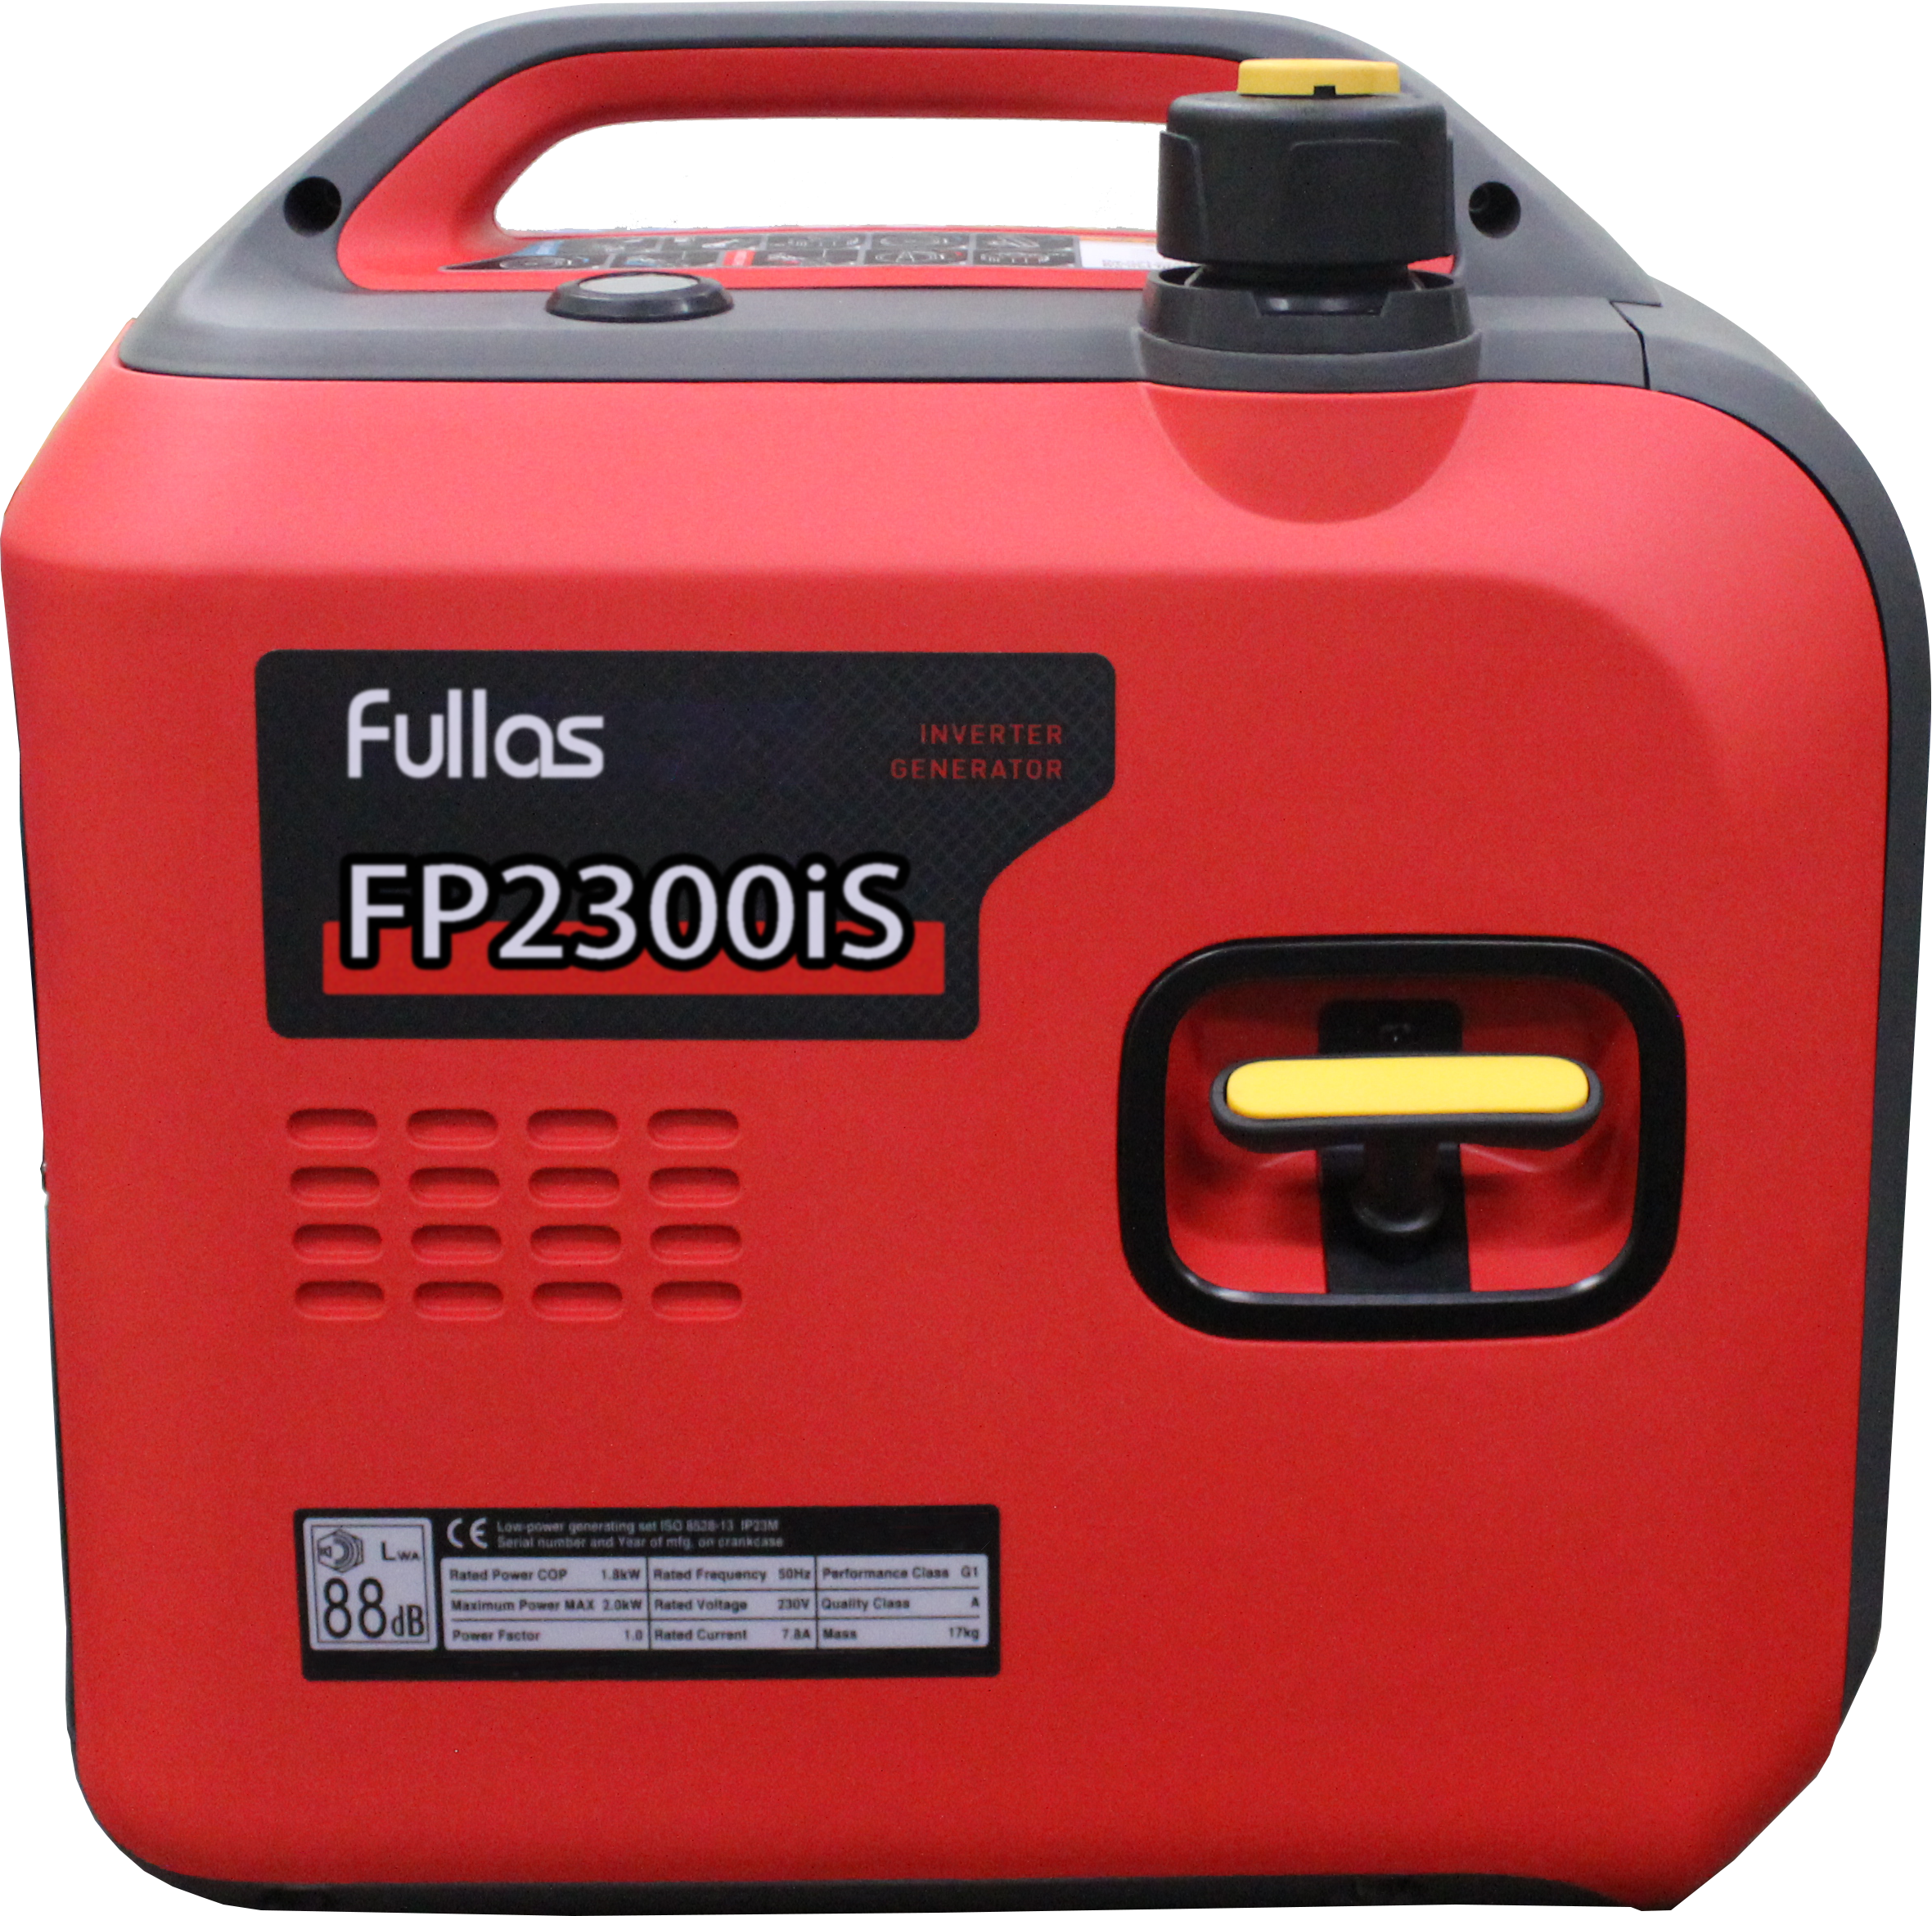 FP2300iS 1,8 kW Inverter-Generator im neuen Design 